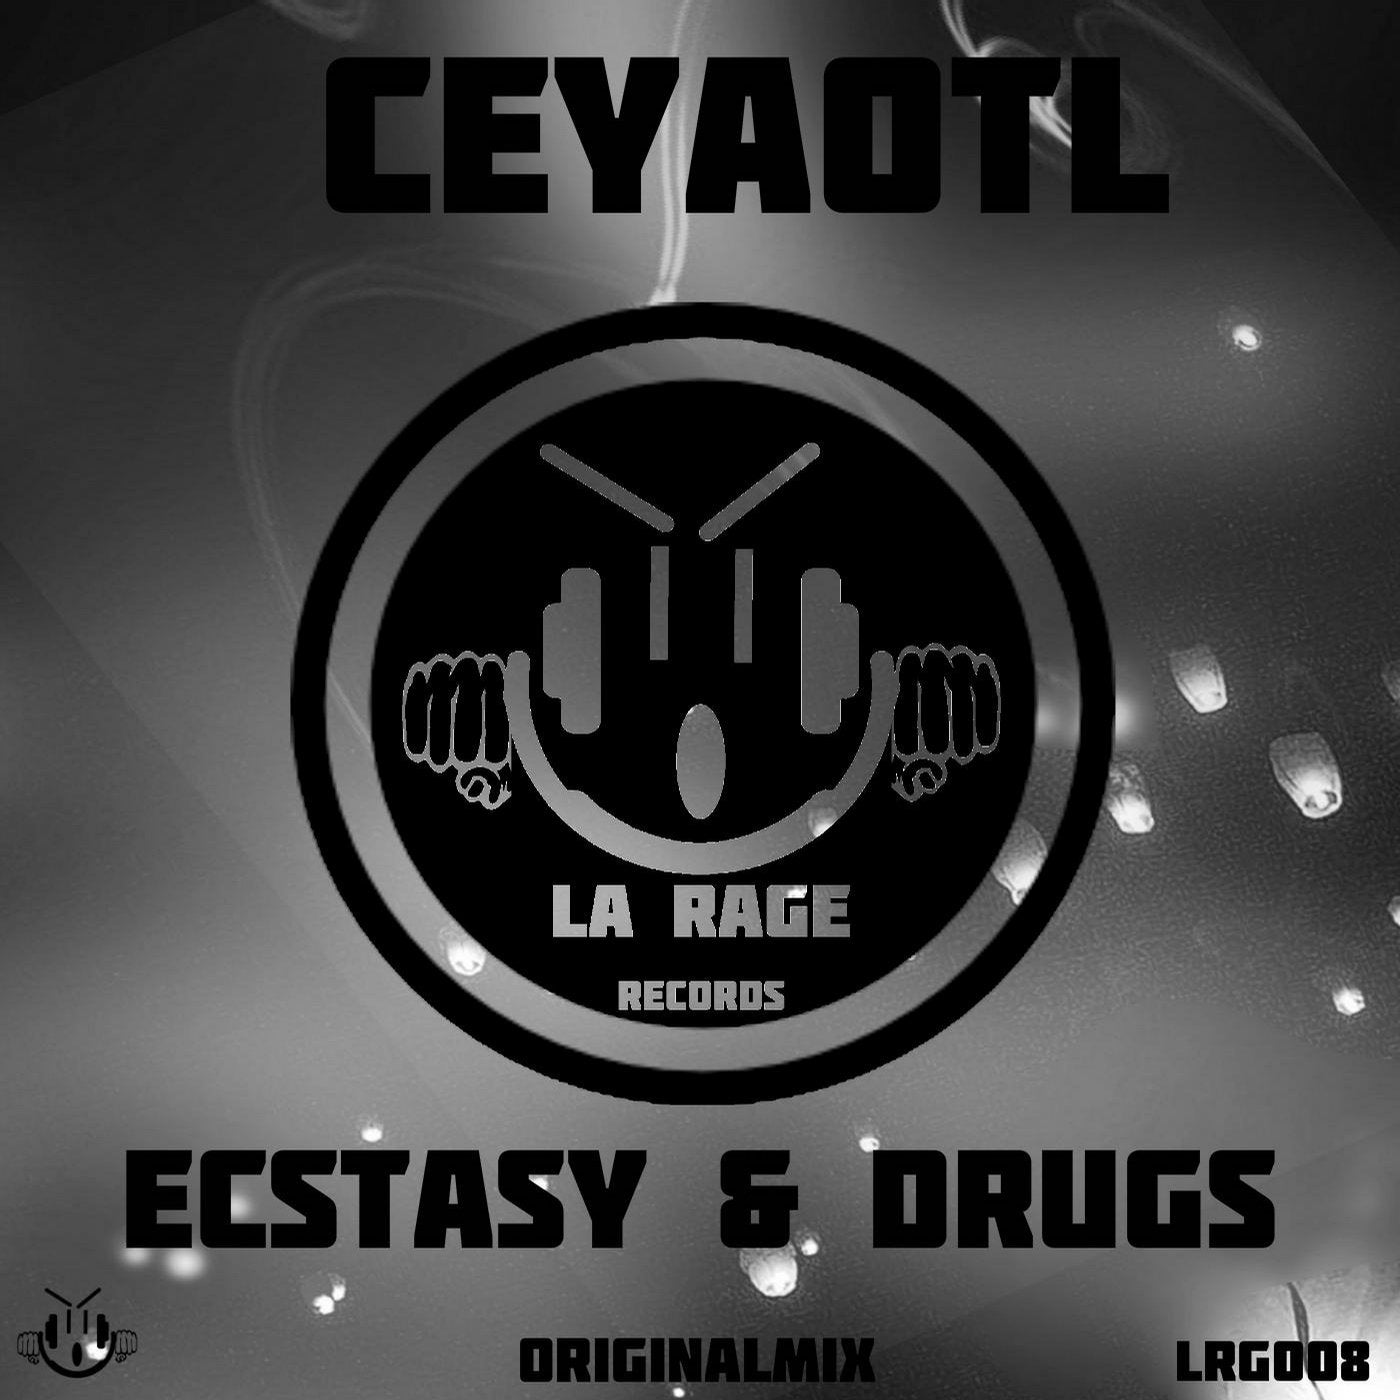 Ecstasy & Drugs